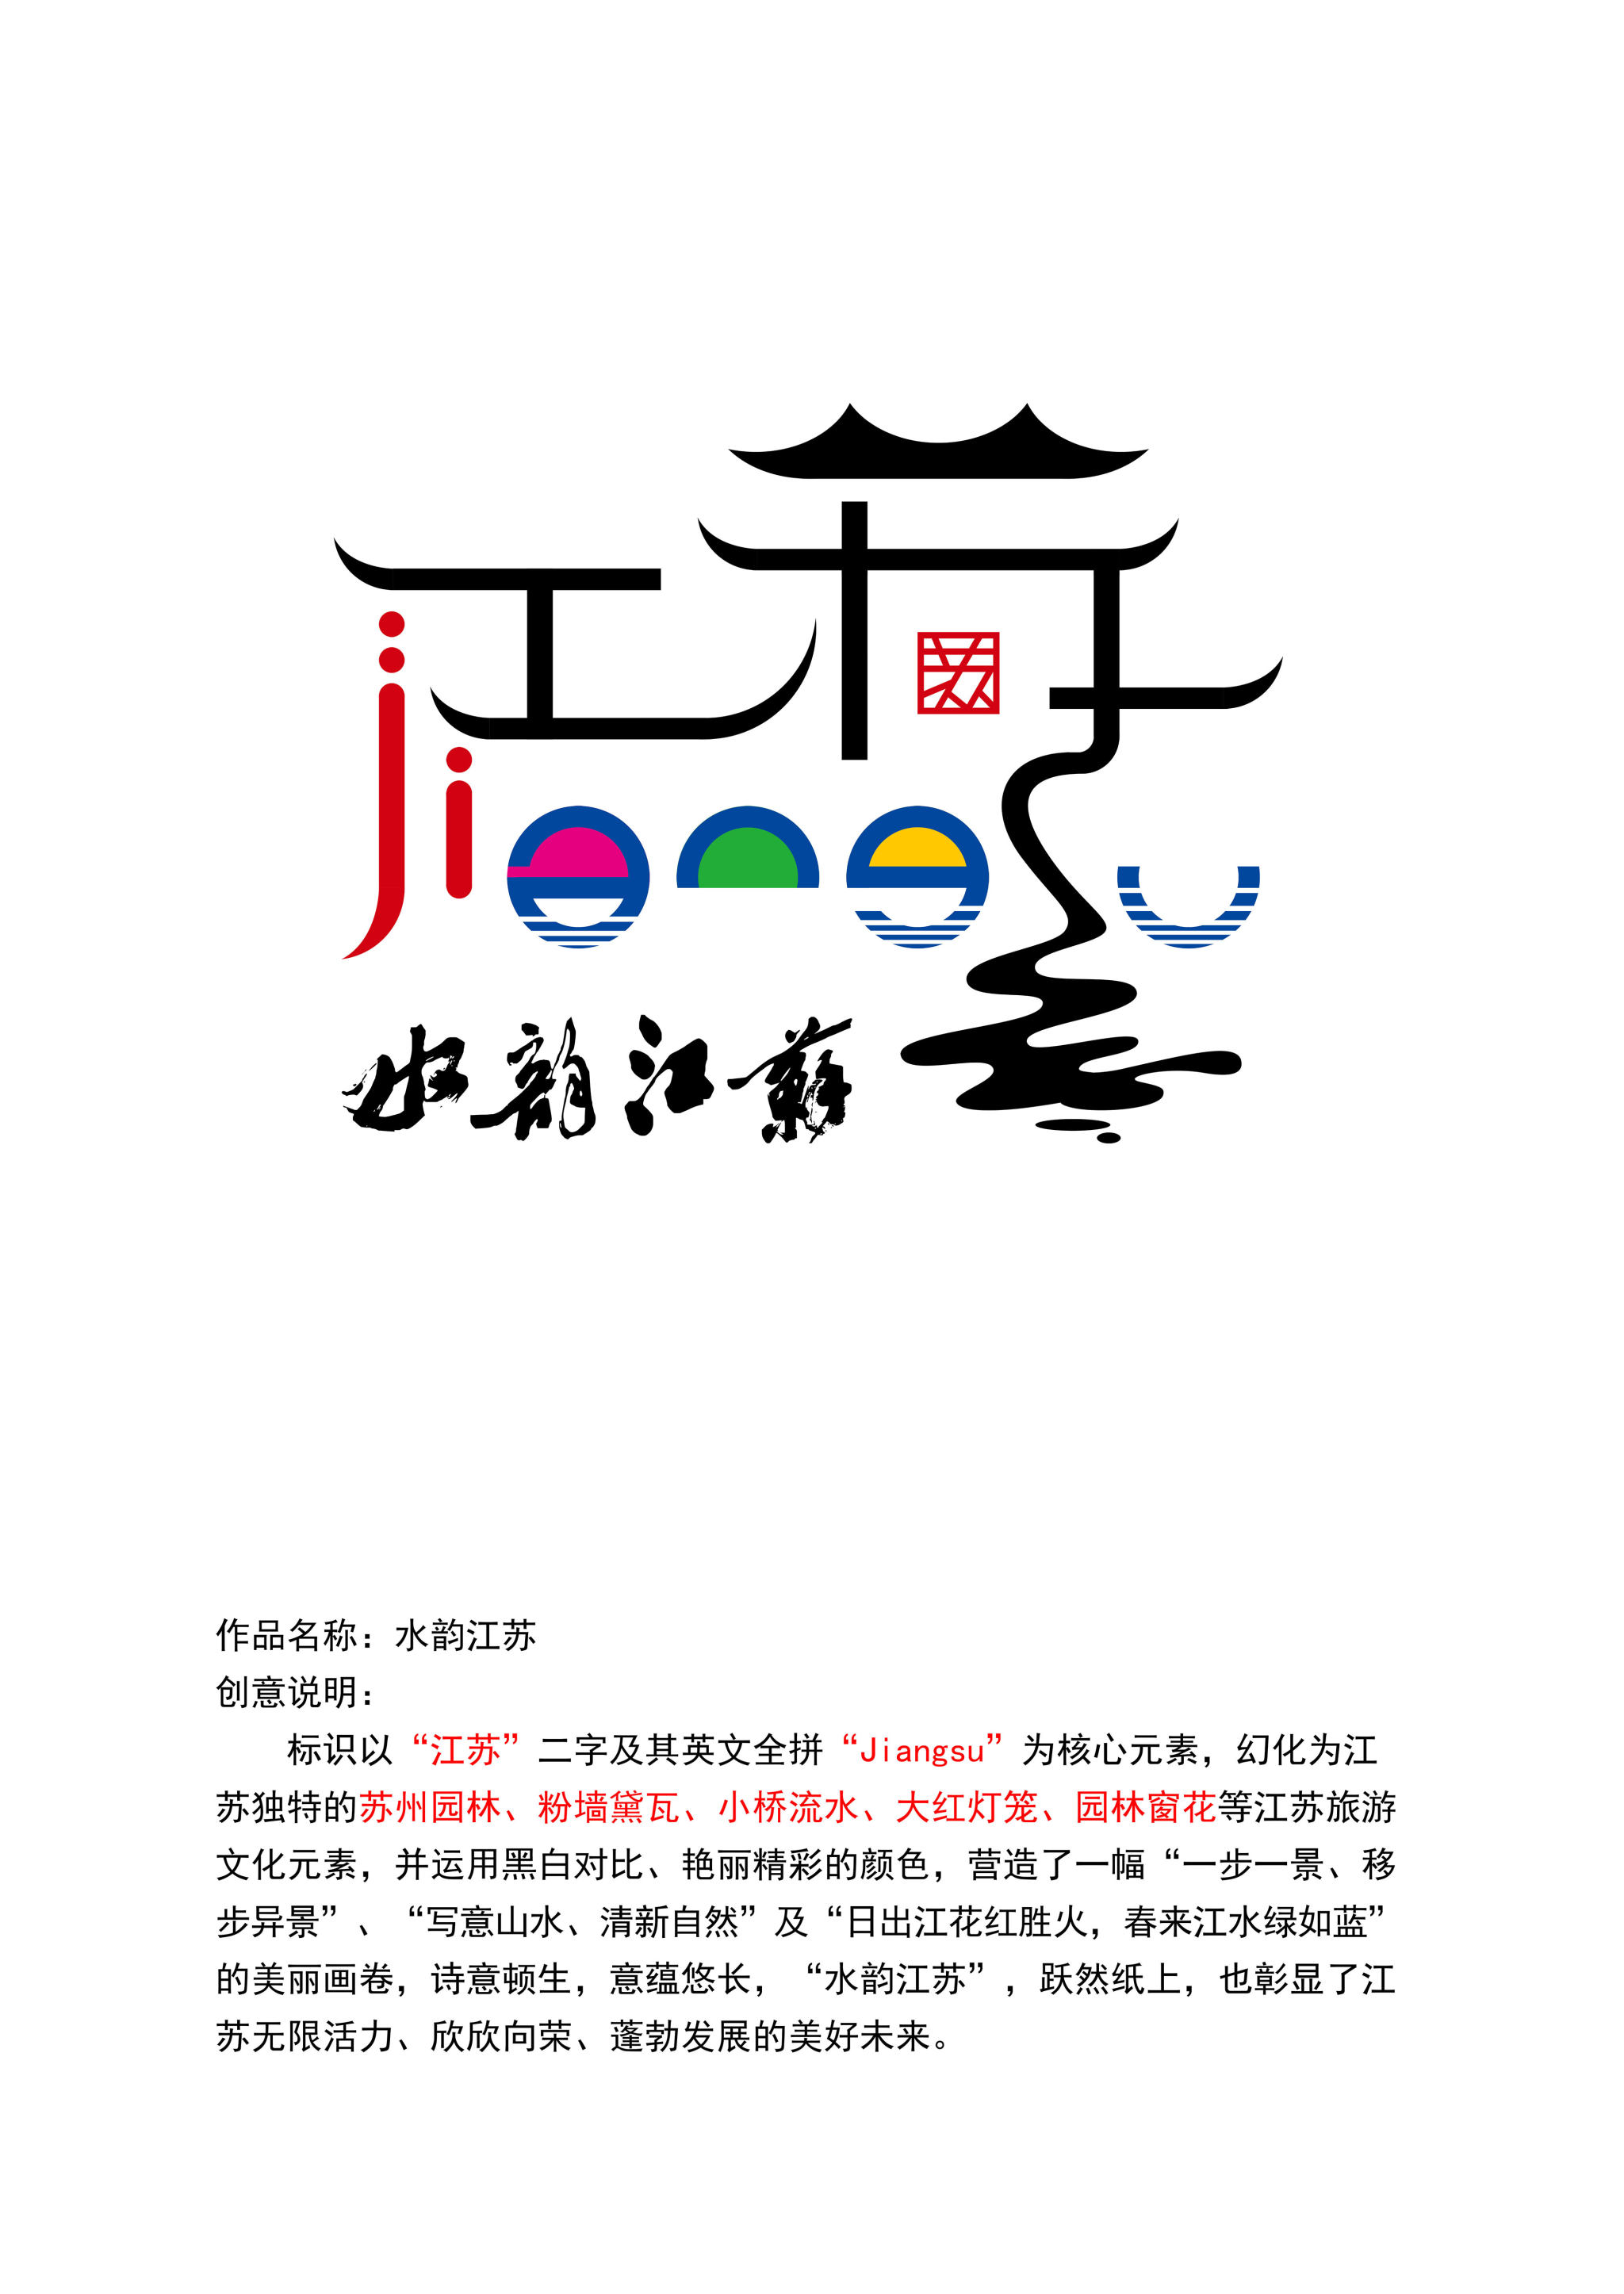 江苏城市图标图片